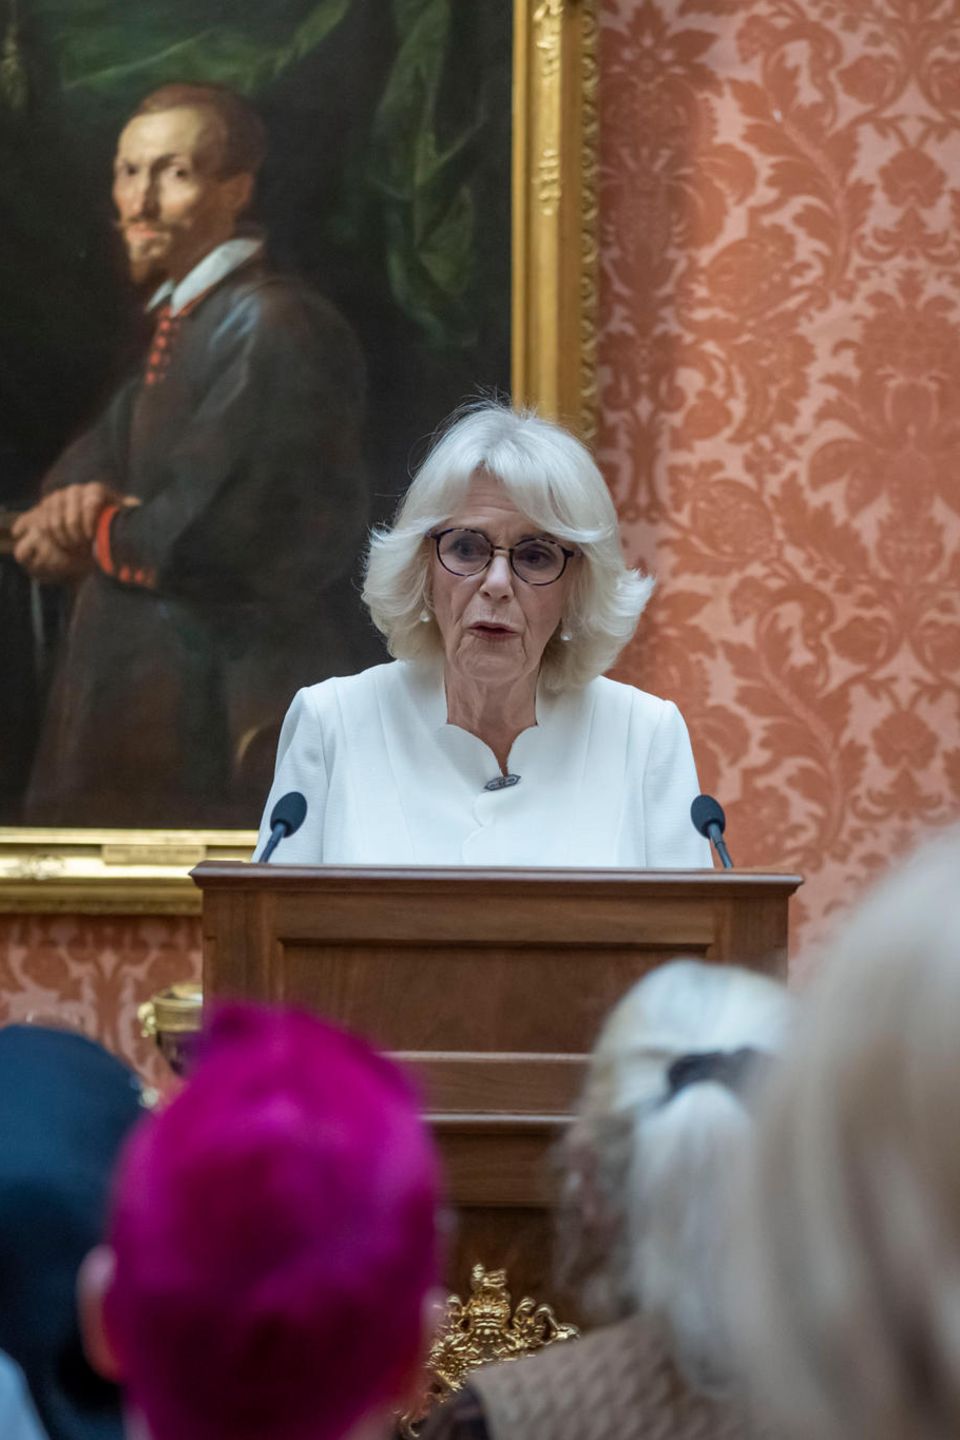 Während der Veranstaltung hält Königin Camilla, die sich bereits seit Jahren für den Kampf gegen Gewalt an Frauen engagiert, eine emotionale Rede. "Wir vereinen uns heute, um dem entgegenzutreten, was zu Recht als globale Pandemie der Gewalt gegen Frauen bezeichnet wird", sagt sie zu ihren 300 Gästen.